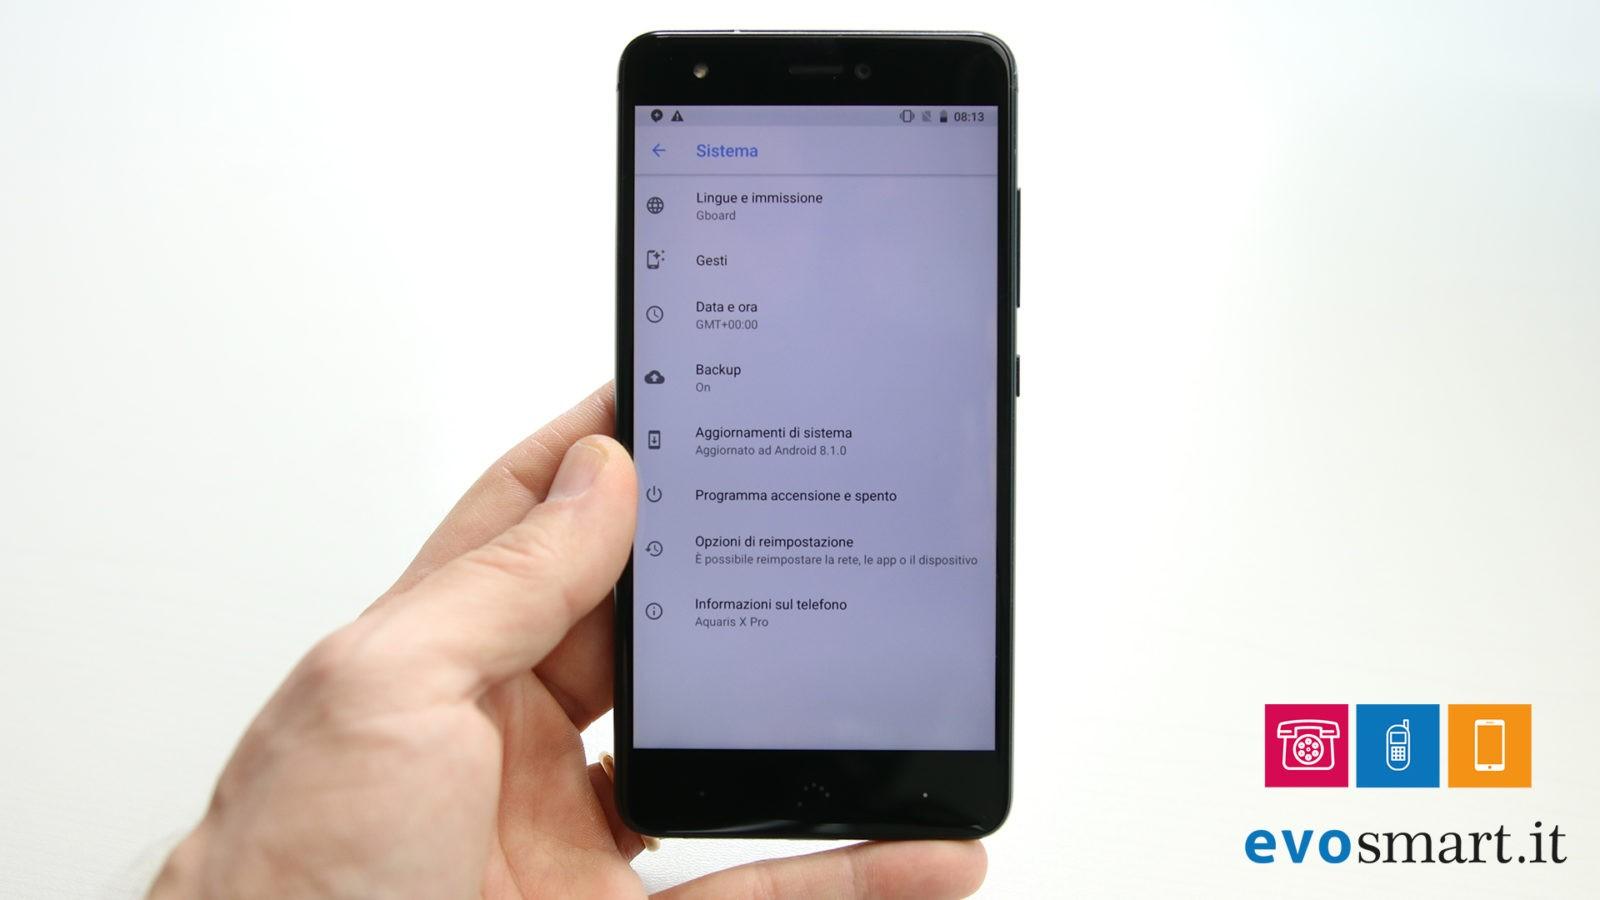 BQ aggiorna i suoi smartphone ad Android 8.1